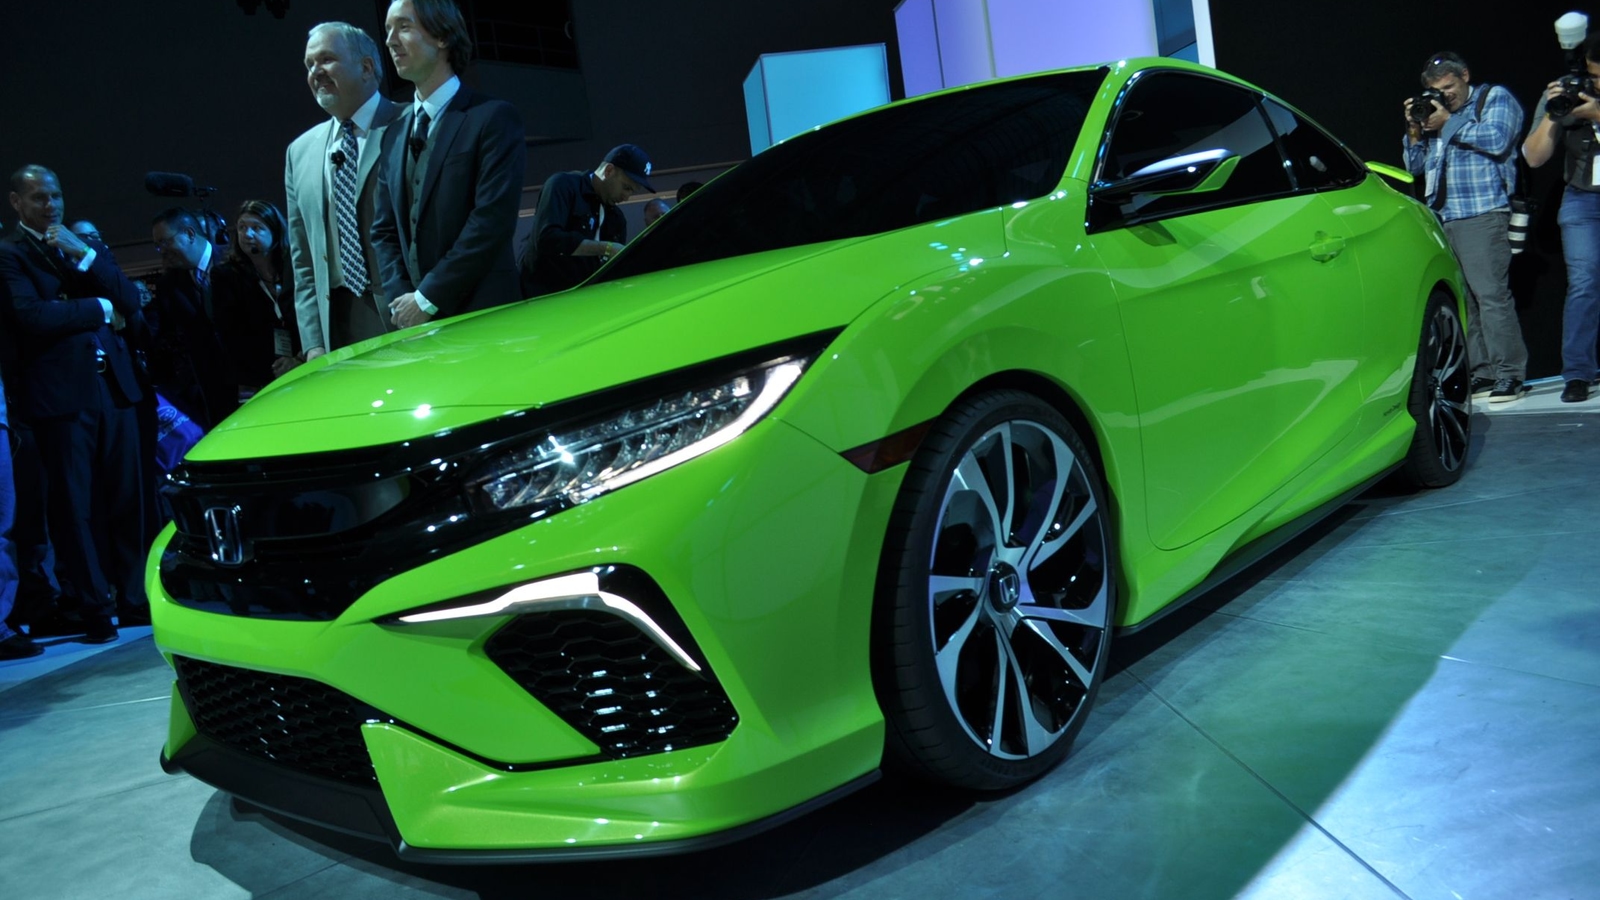 Honda Civic News Green Car Photos, News, Reviews, and Insights